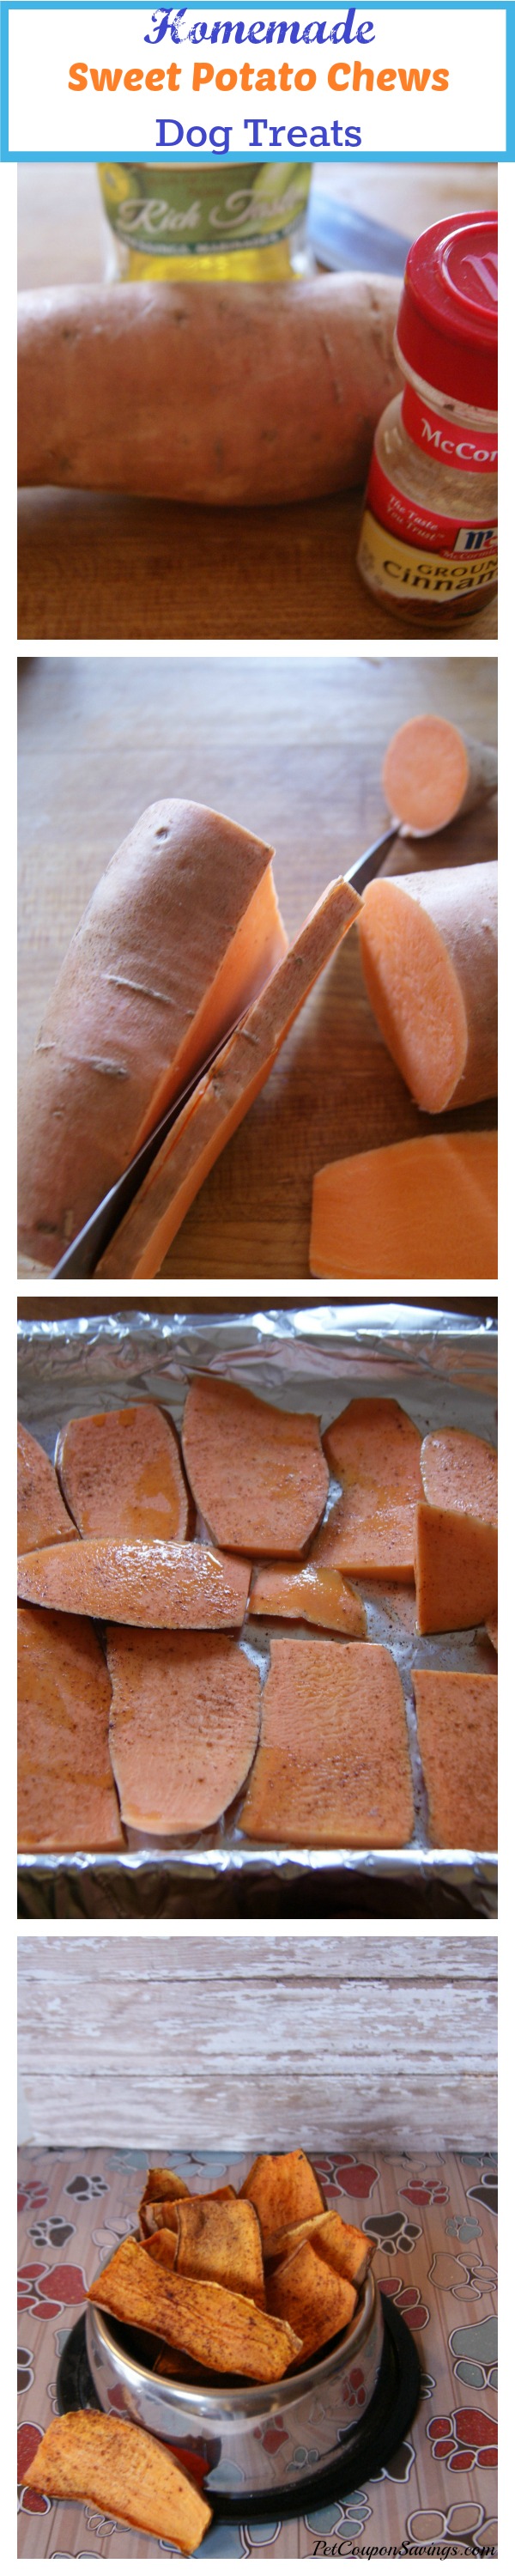 Easy Homemade Sweet Potato Chews Dog Treats